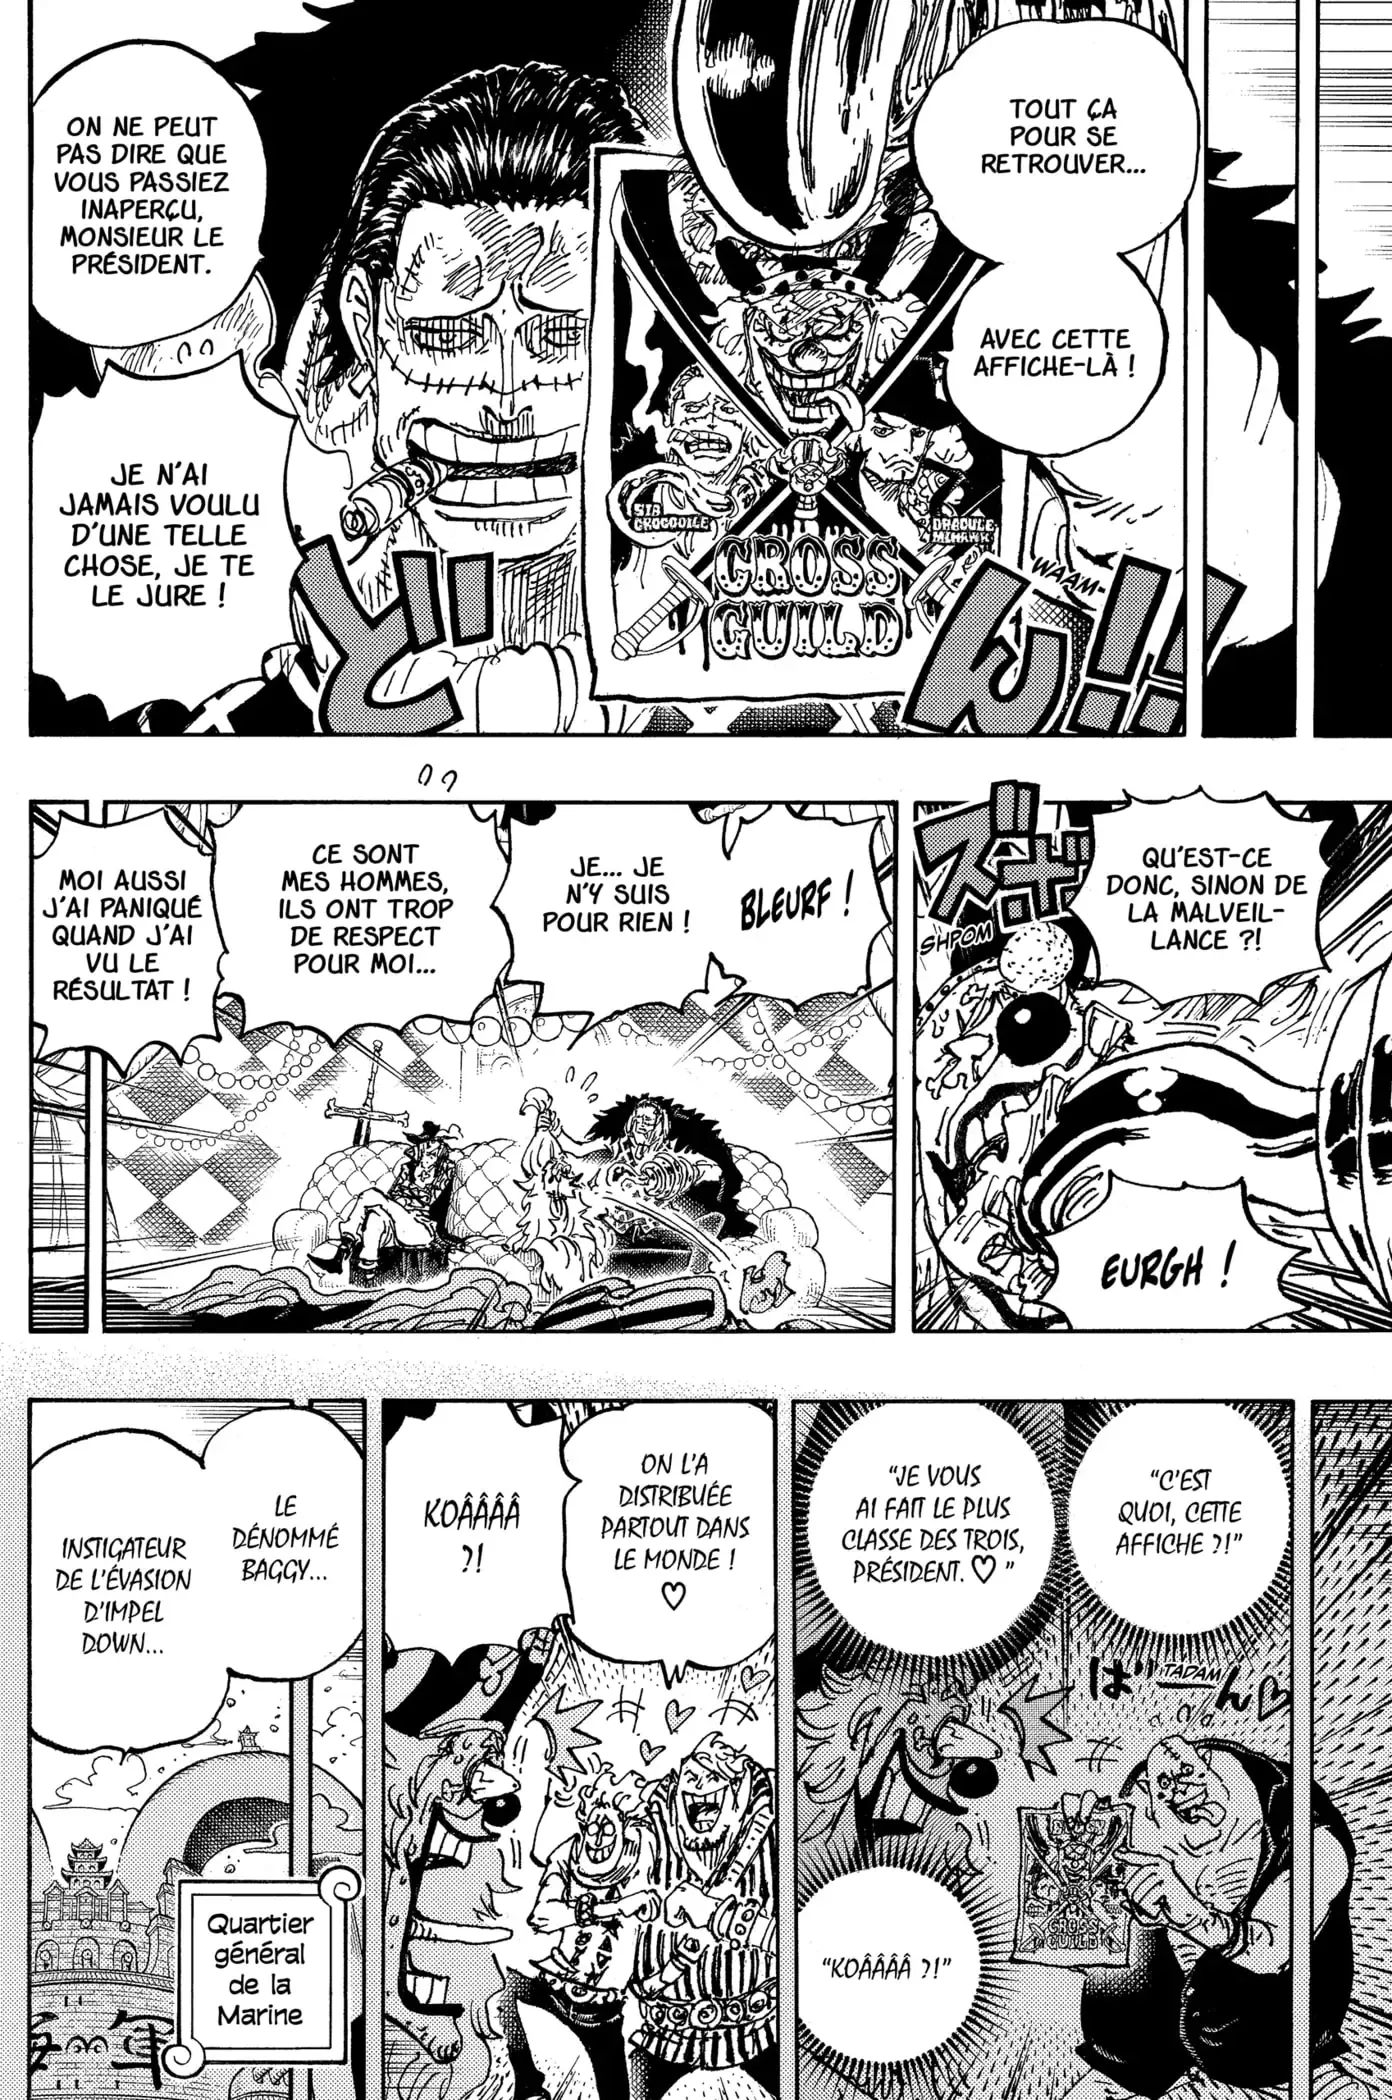 3D2Y - L'incroyable chapitre 1058 de One Piece est dispo